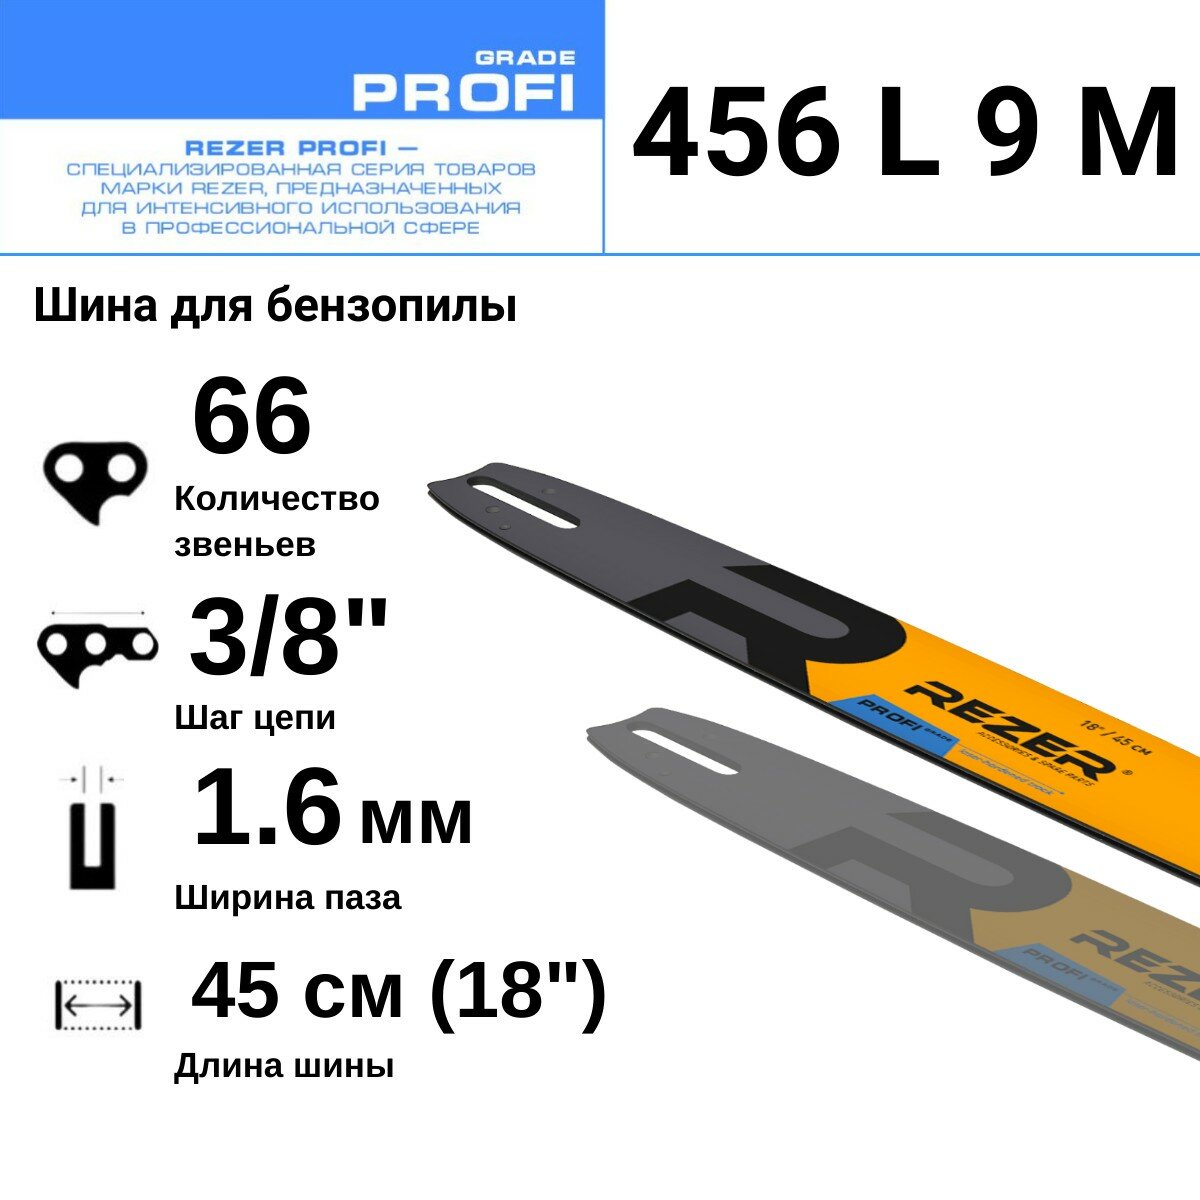 Rezer PROFI 456 L 9 M Шина для бензопилы STIHL (Штиль) MS 361, 440, 660, 66 звеньев, длина шины 18"( 45 см) , шаг 3/8", ширина паза 1.6 мм